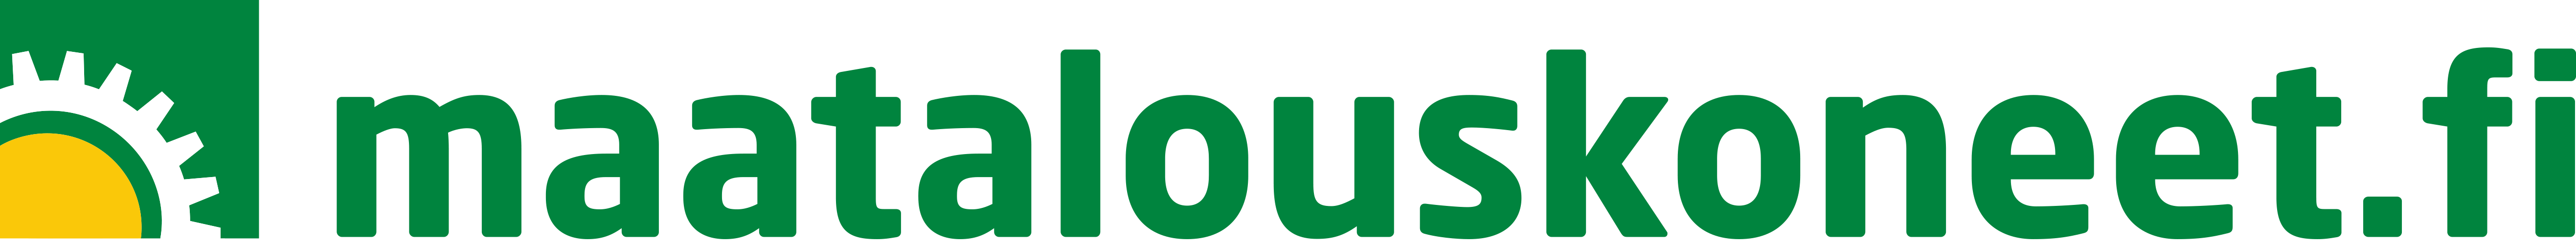 maatalouskoneet logo